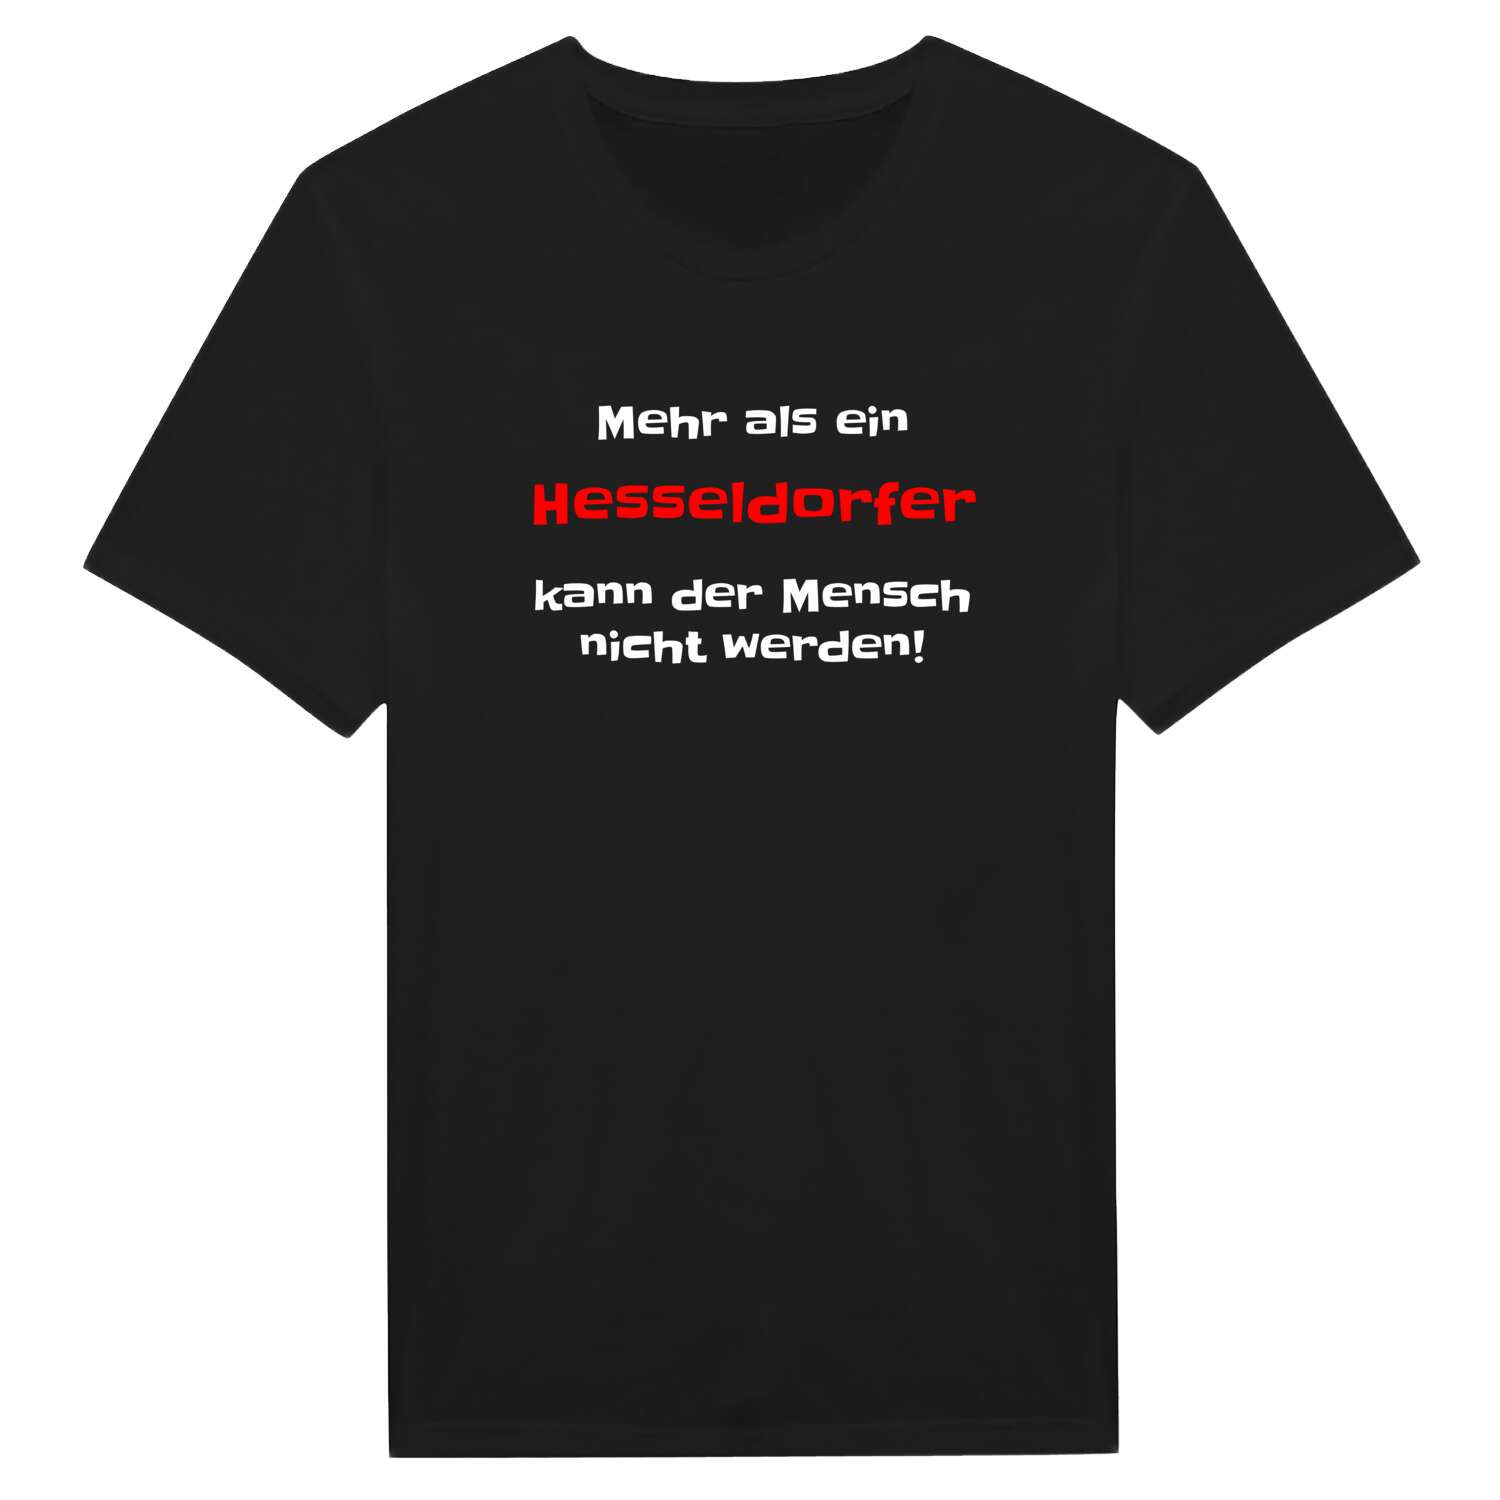 Hesseldorf T-Shirt »Mehr als ein«